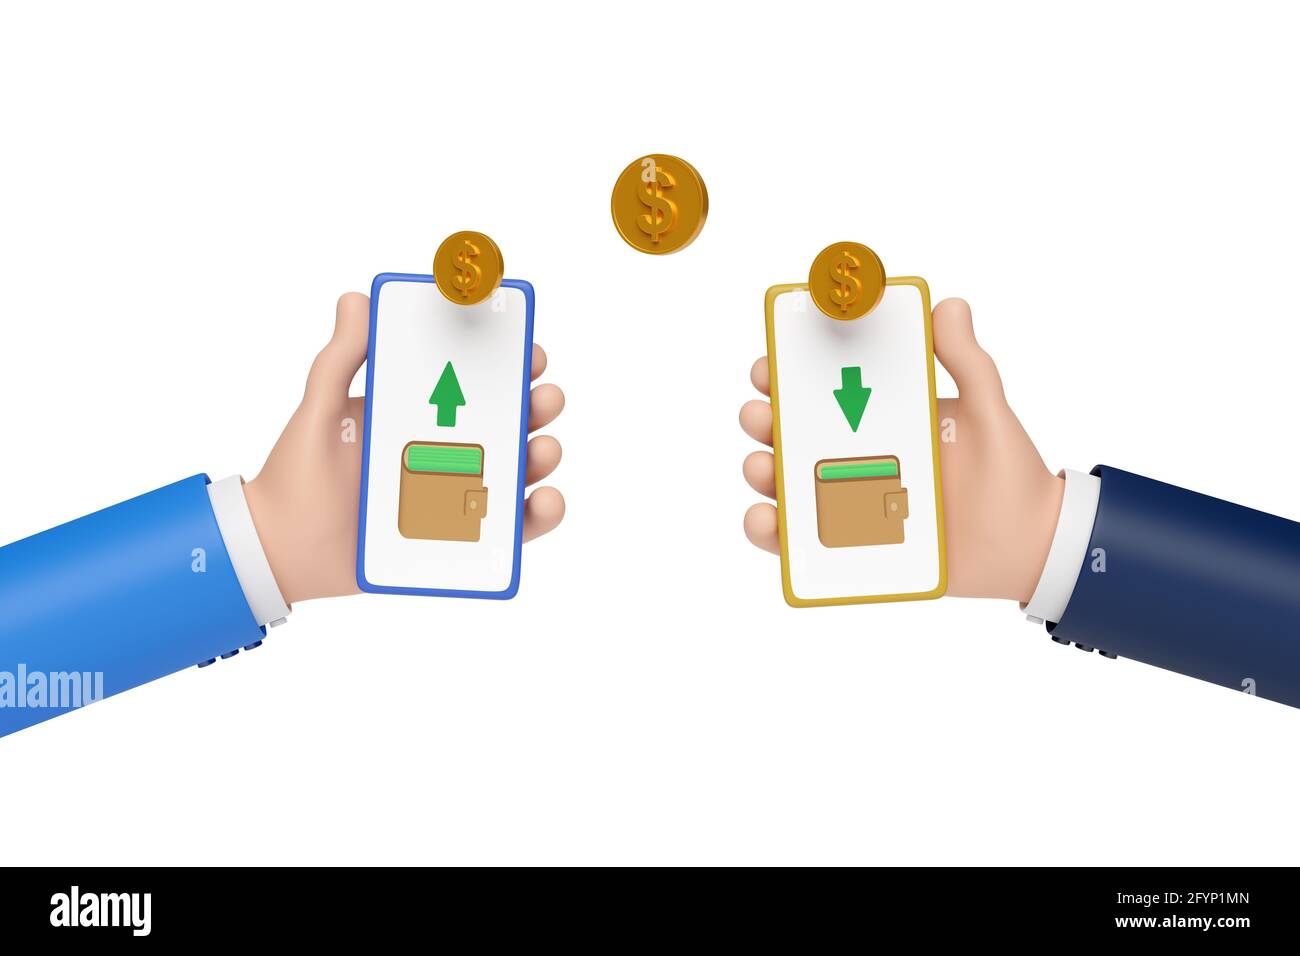 Deux mains de dessin animé tenant des téléphones mobiles faisant un transfert d'argent. illustration 3d. Banque D'Images